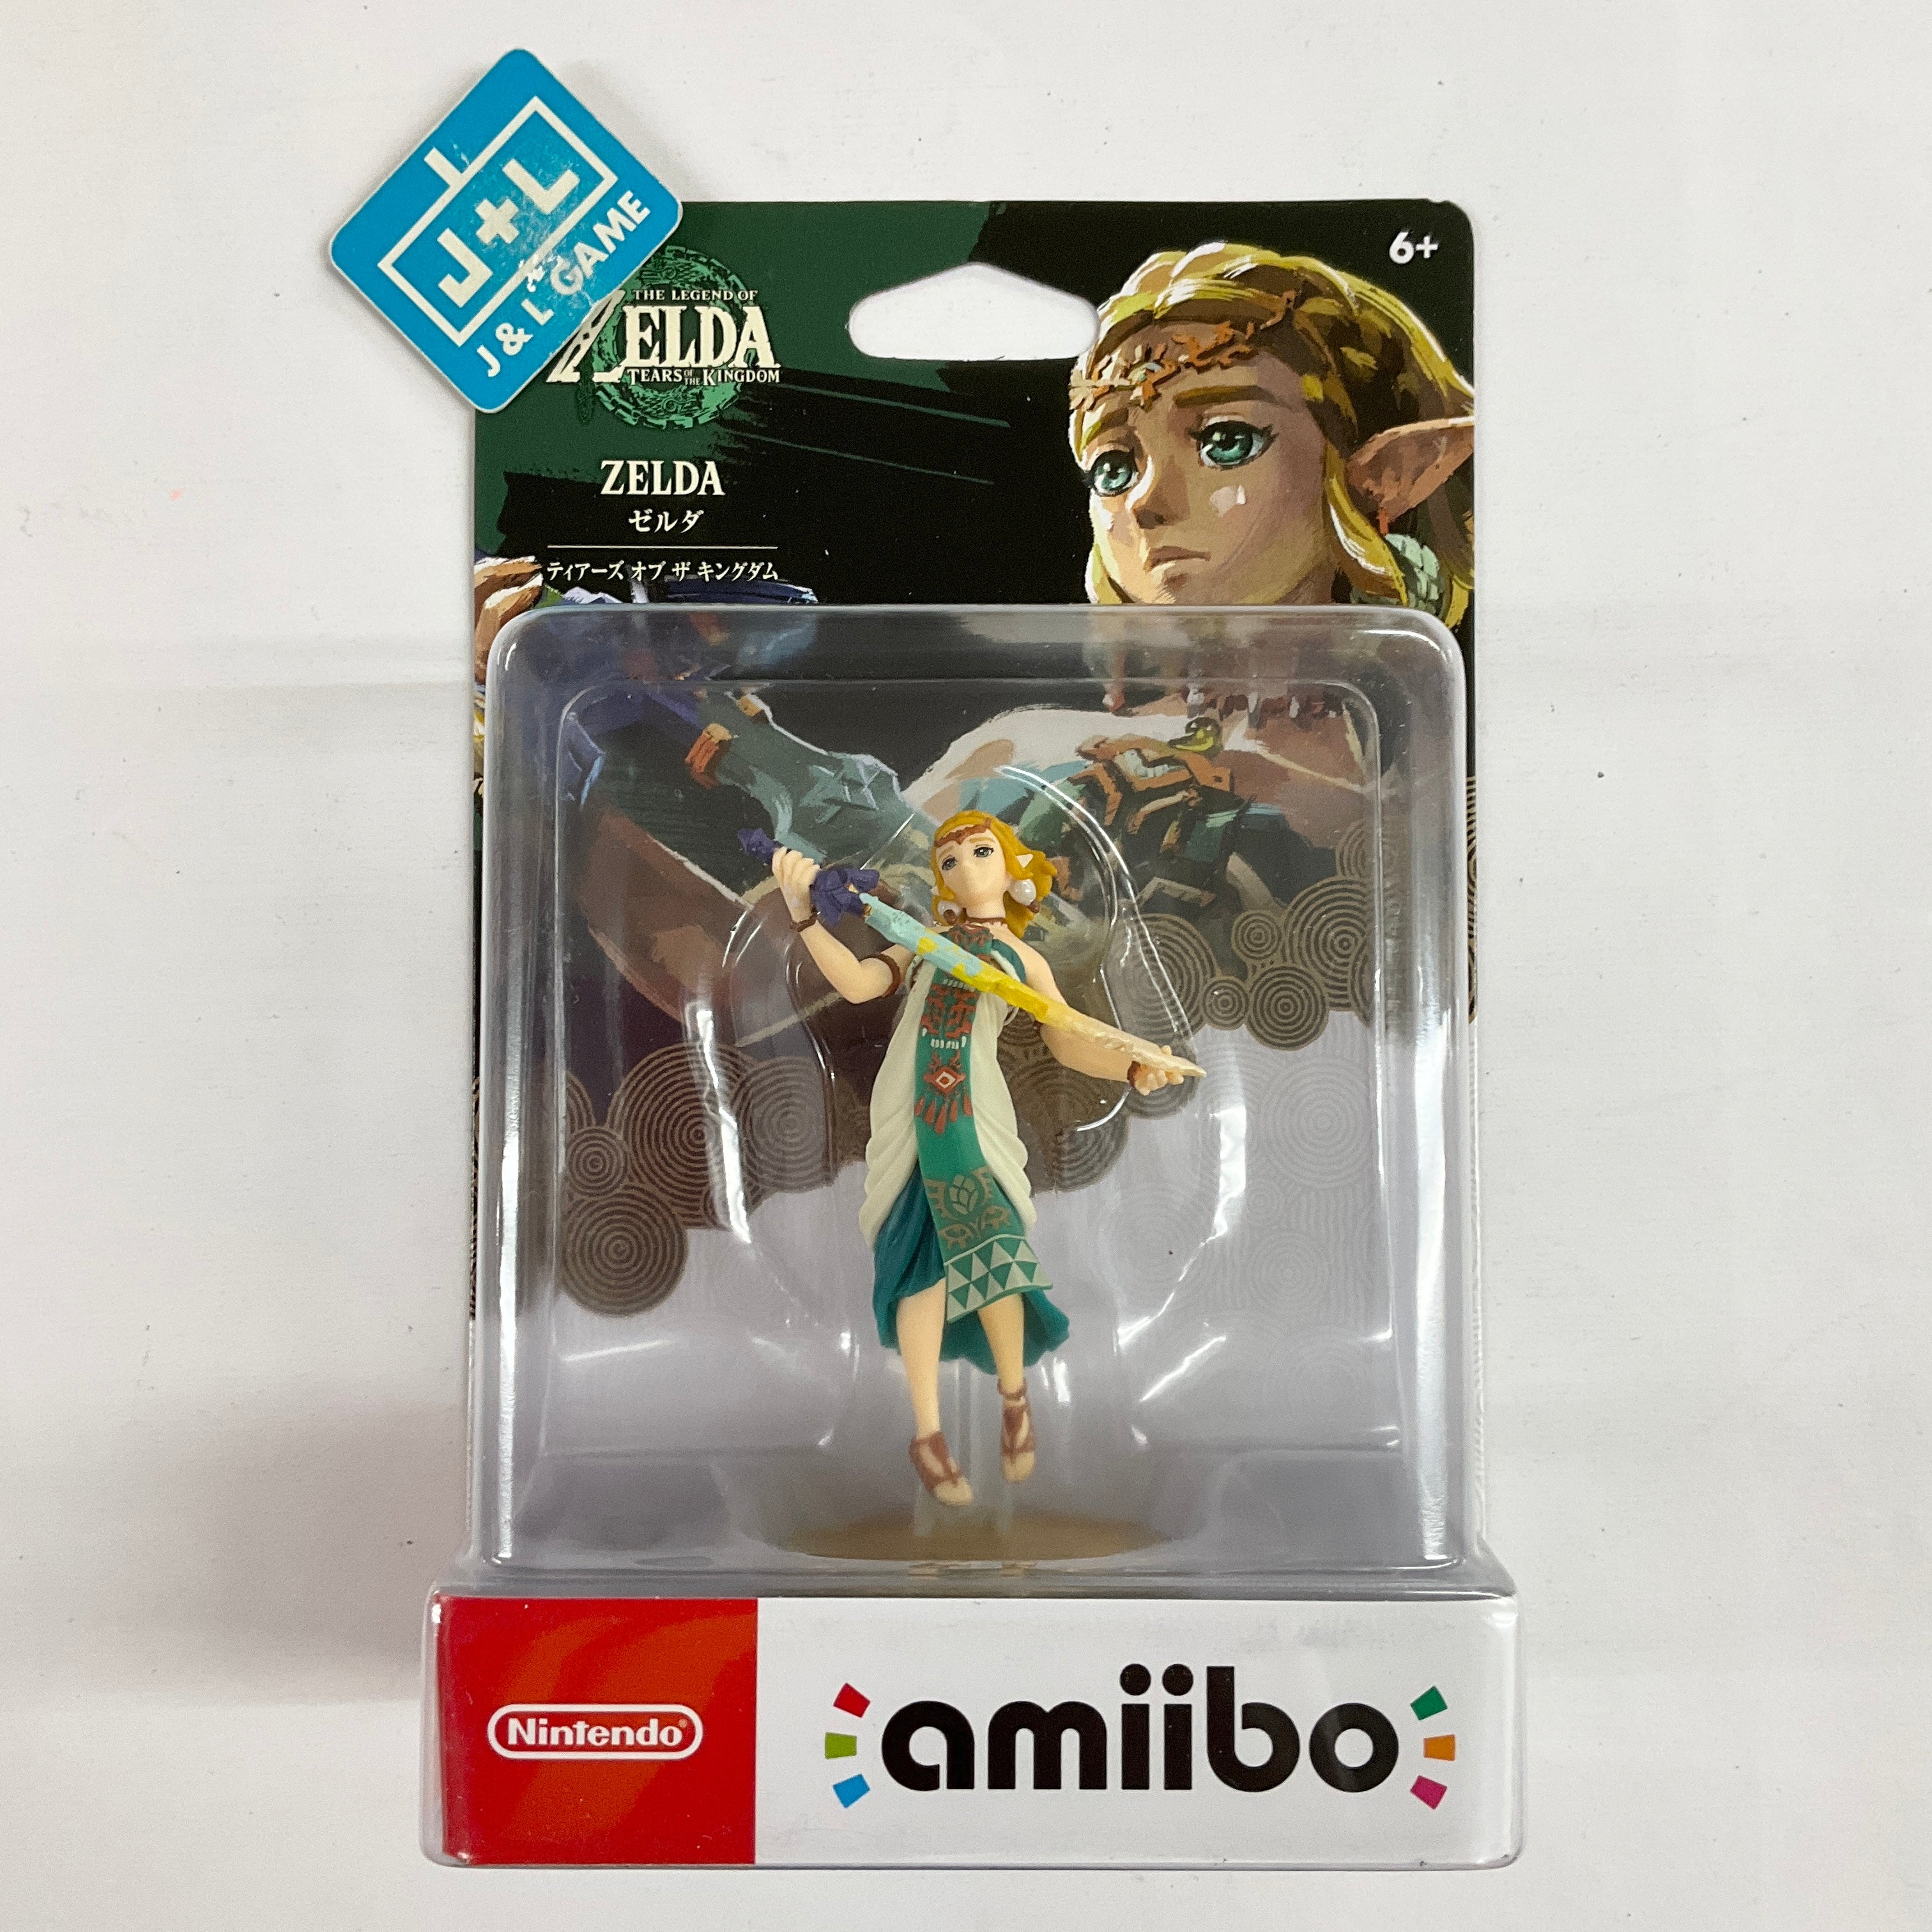 Zelda (The Legend of Zelda: Tears of the Kingdom) - Nintendo